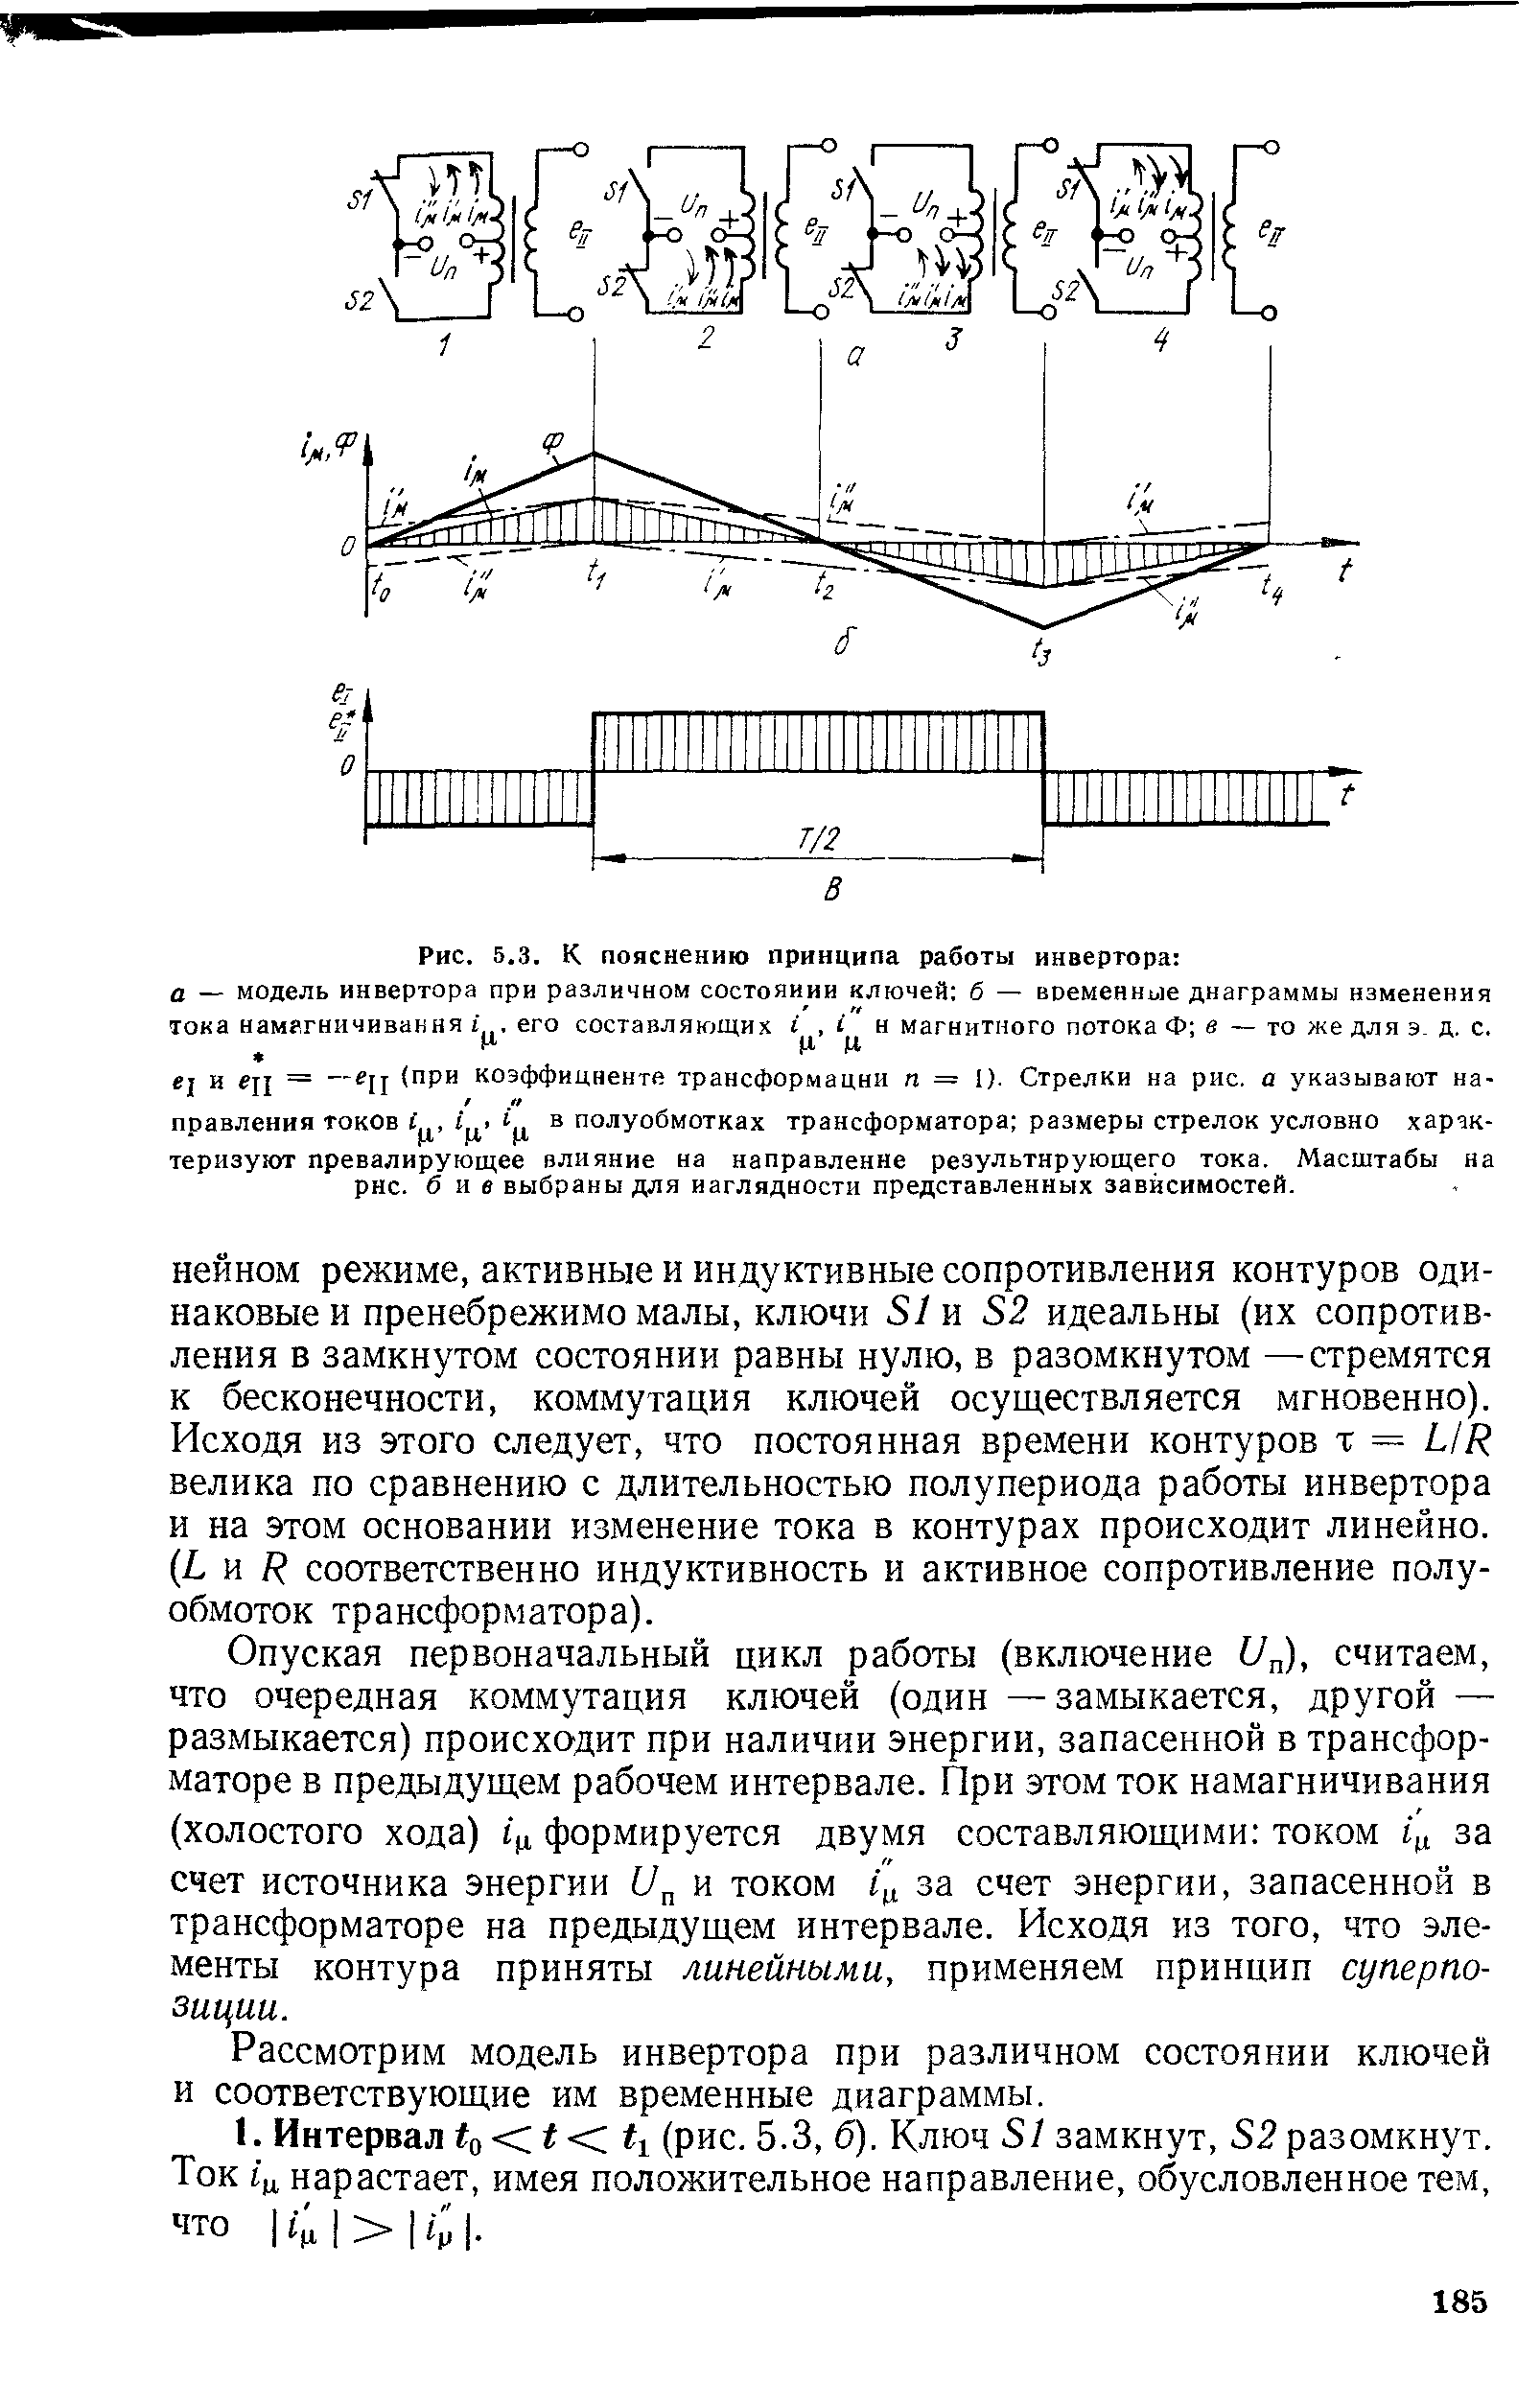 Рис. 5.3. К пояснению принципа работы инвертора а — модель инвертора при различном состоянии ключей б — временнъ1е диаграммы изменения тока намагничивания его составляющих н магнитного потока Ф в — то же для э. д. с.
